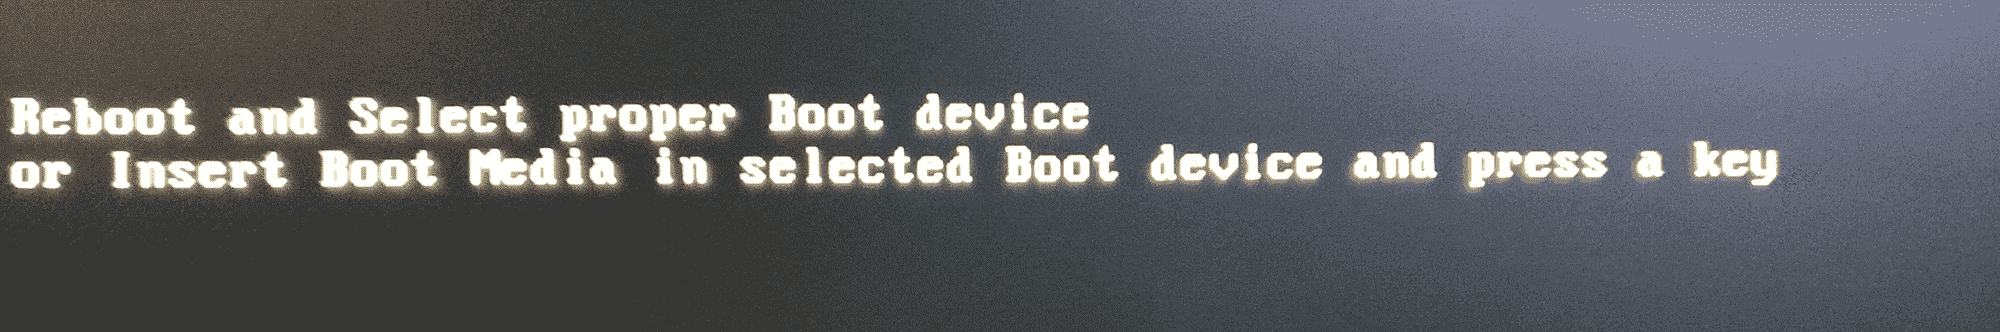 Windows 10 - Reboot and Select proper Boot device. 1835fcd8-5de4-439b-b43a-5c53913d9e99?upload=true.png